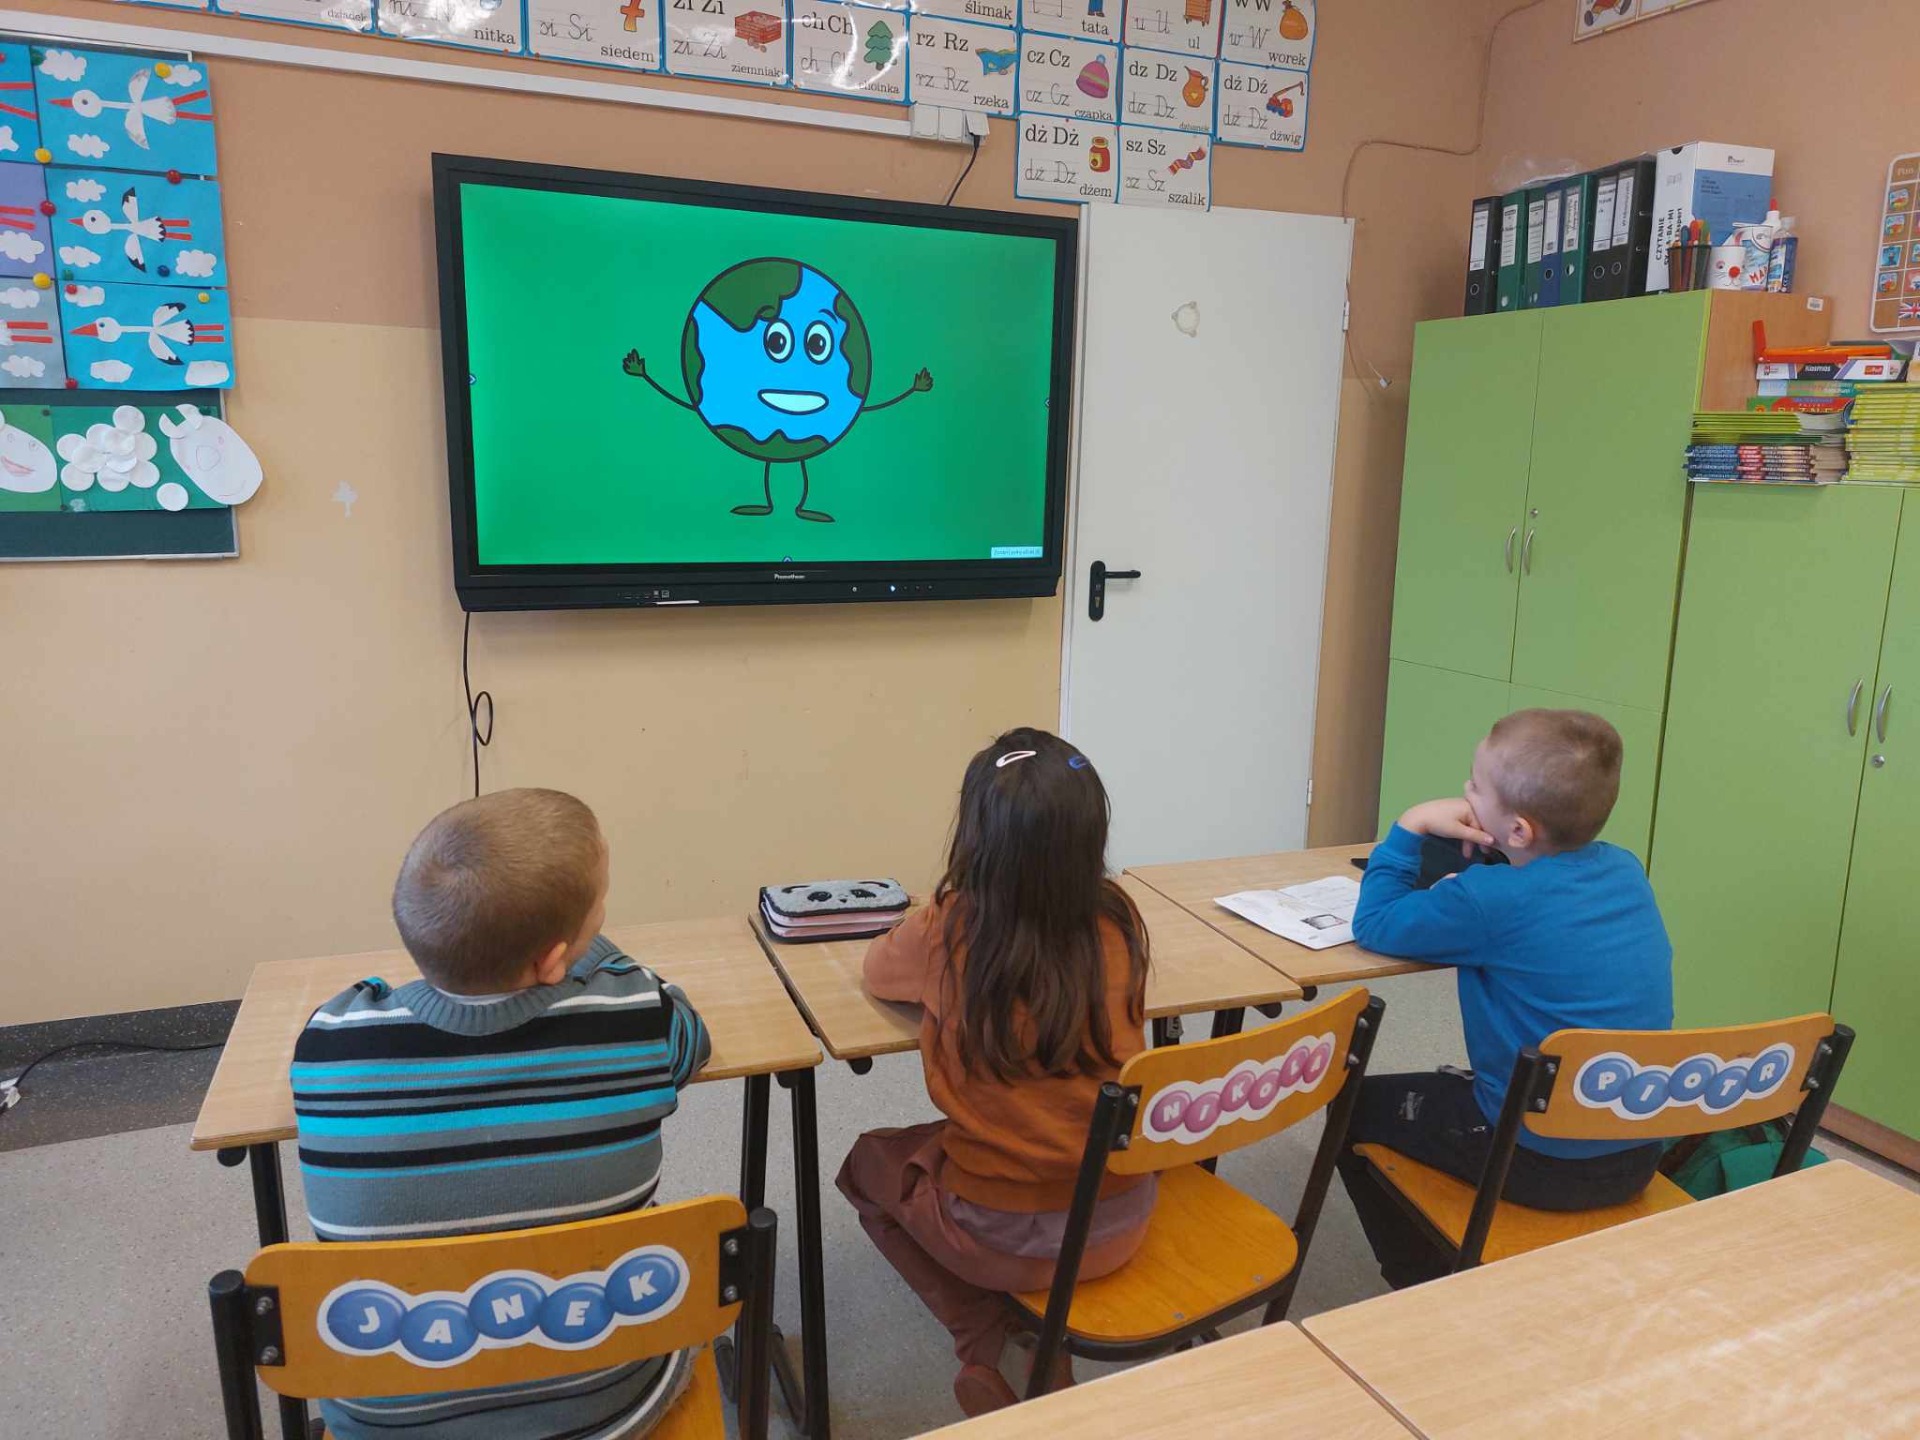 Uczniowie siedzą na krzesłach i oglądają film edukacyjny o Dniu Ziemi